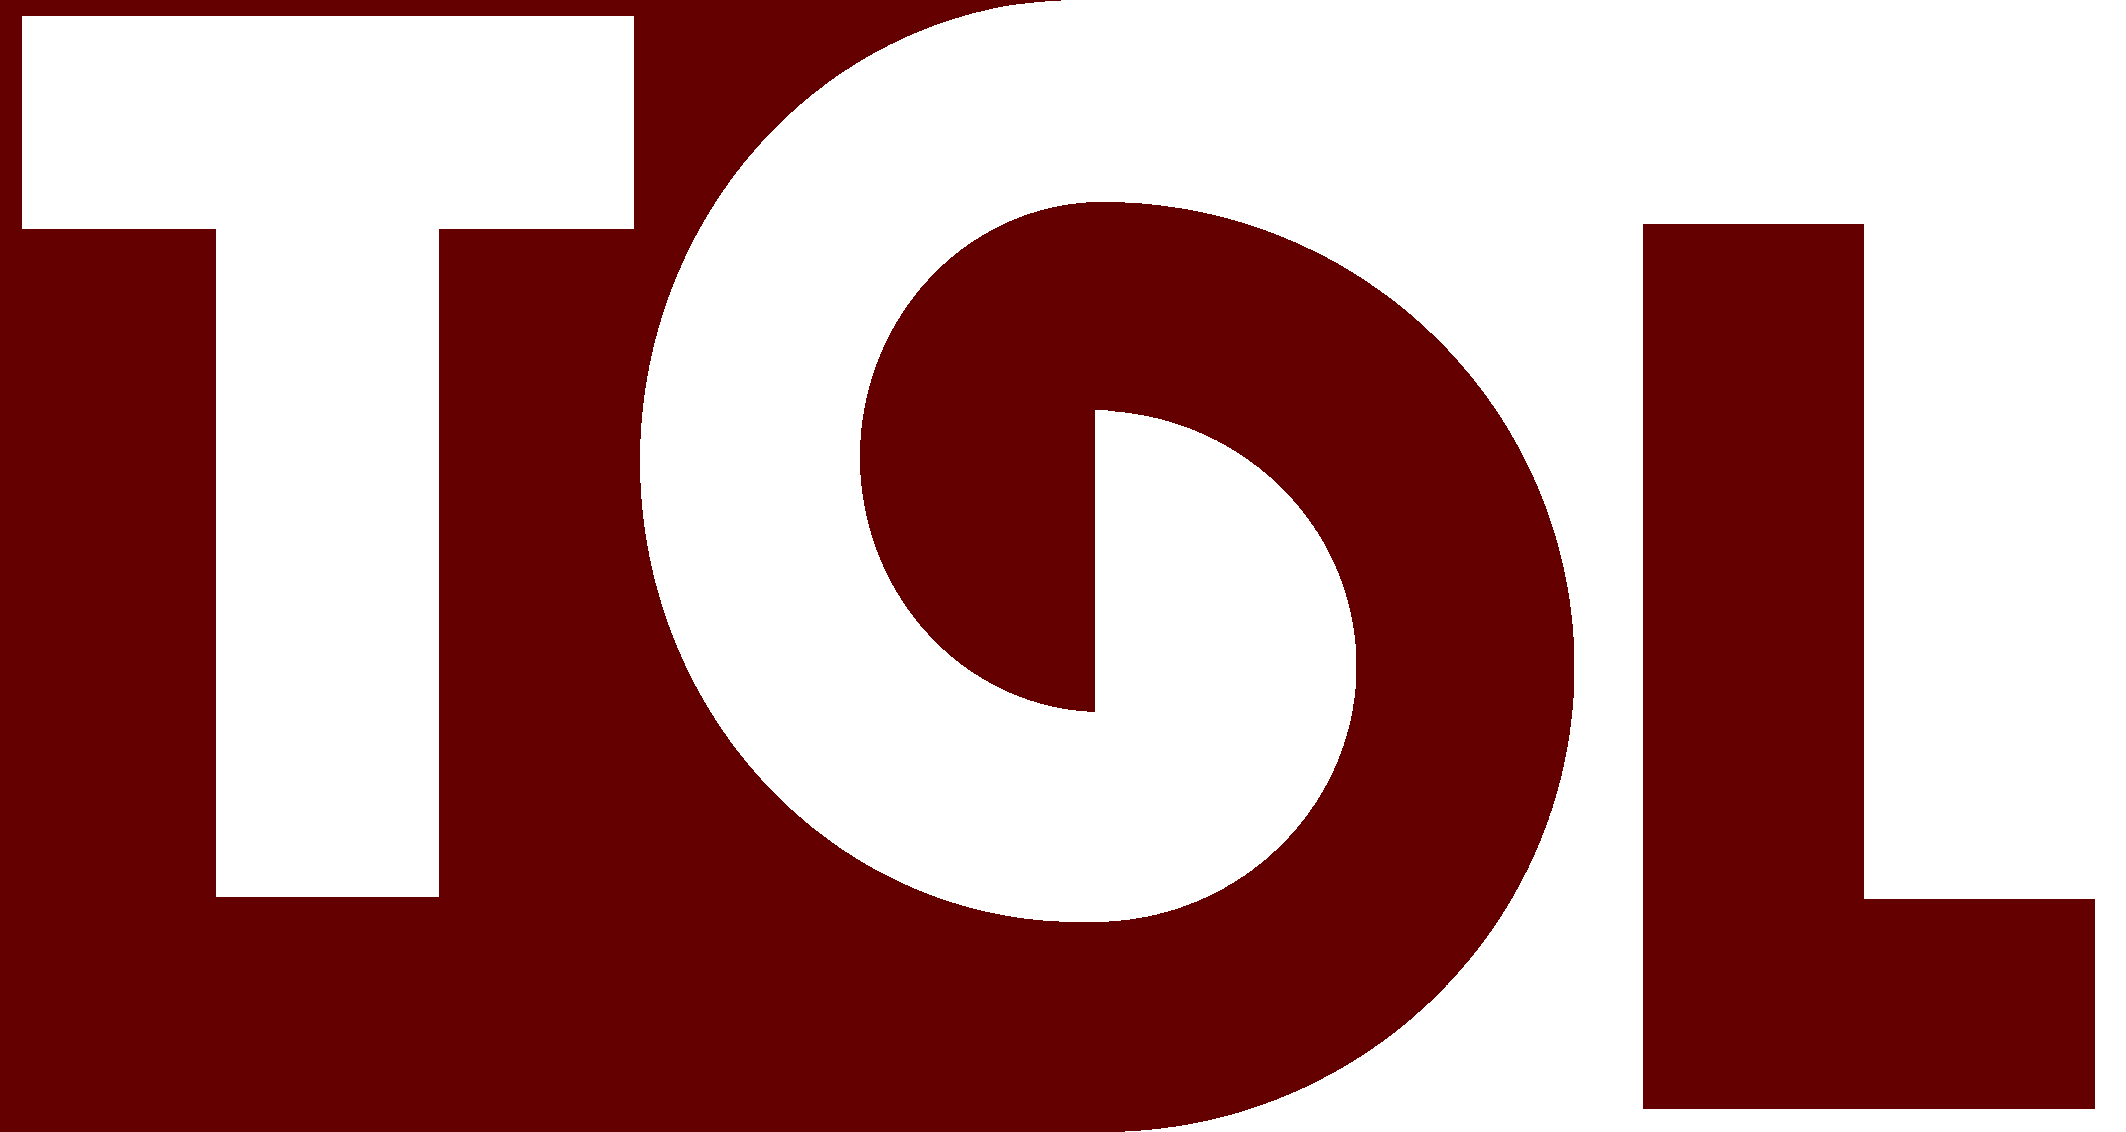 TOL logo, logotype